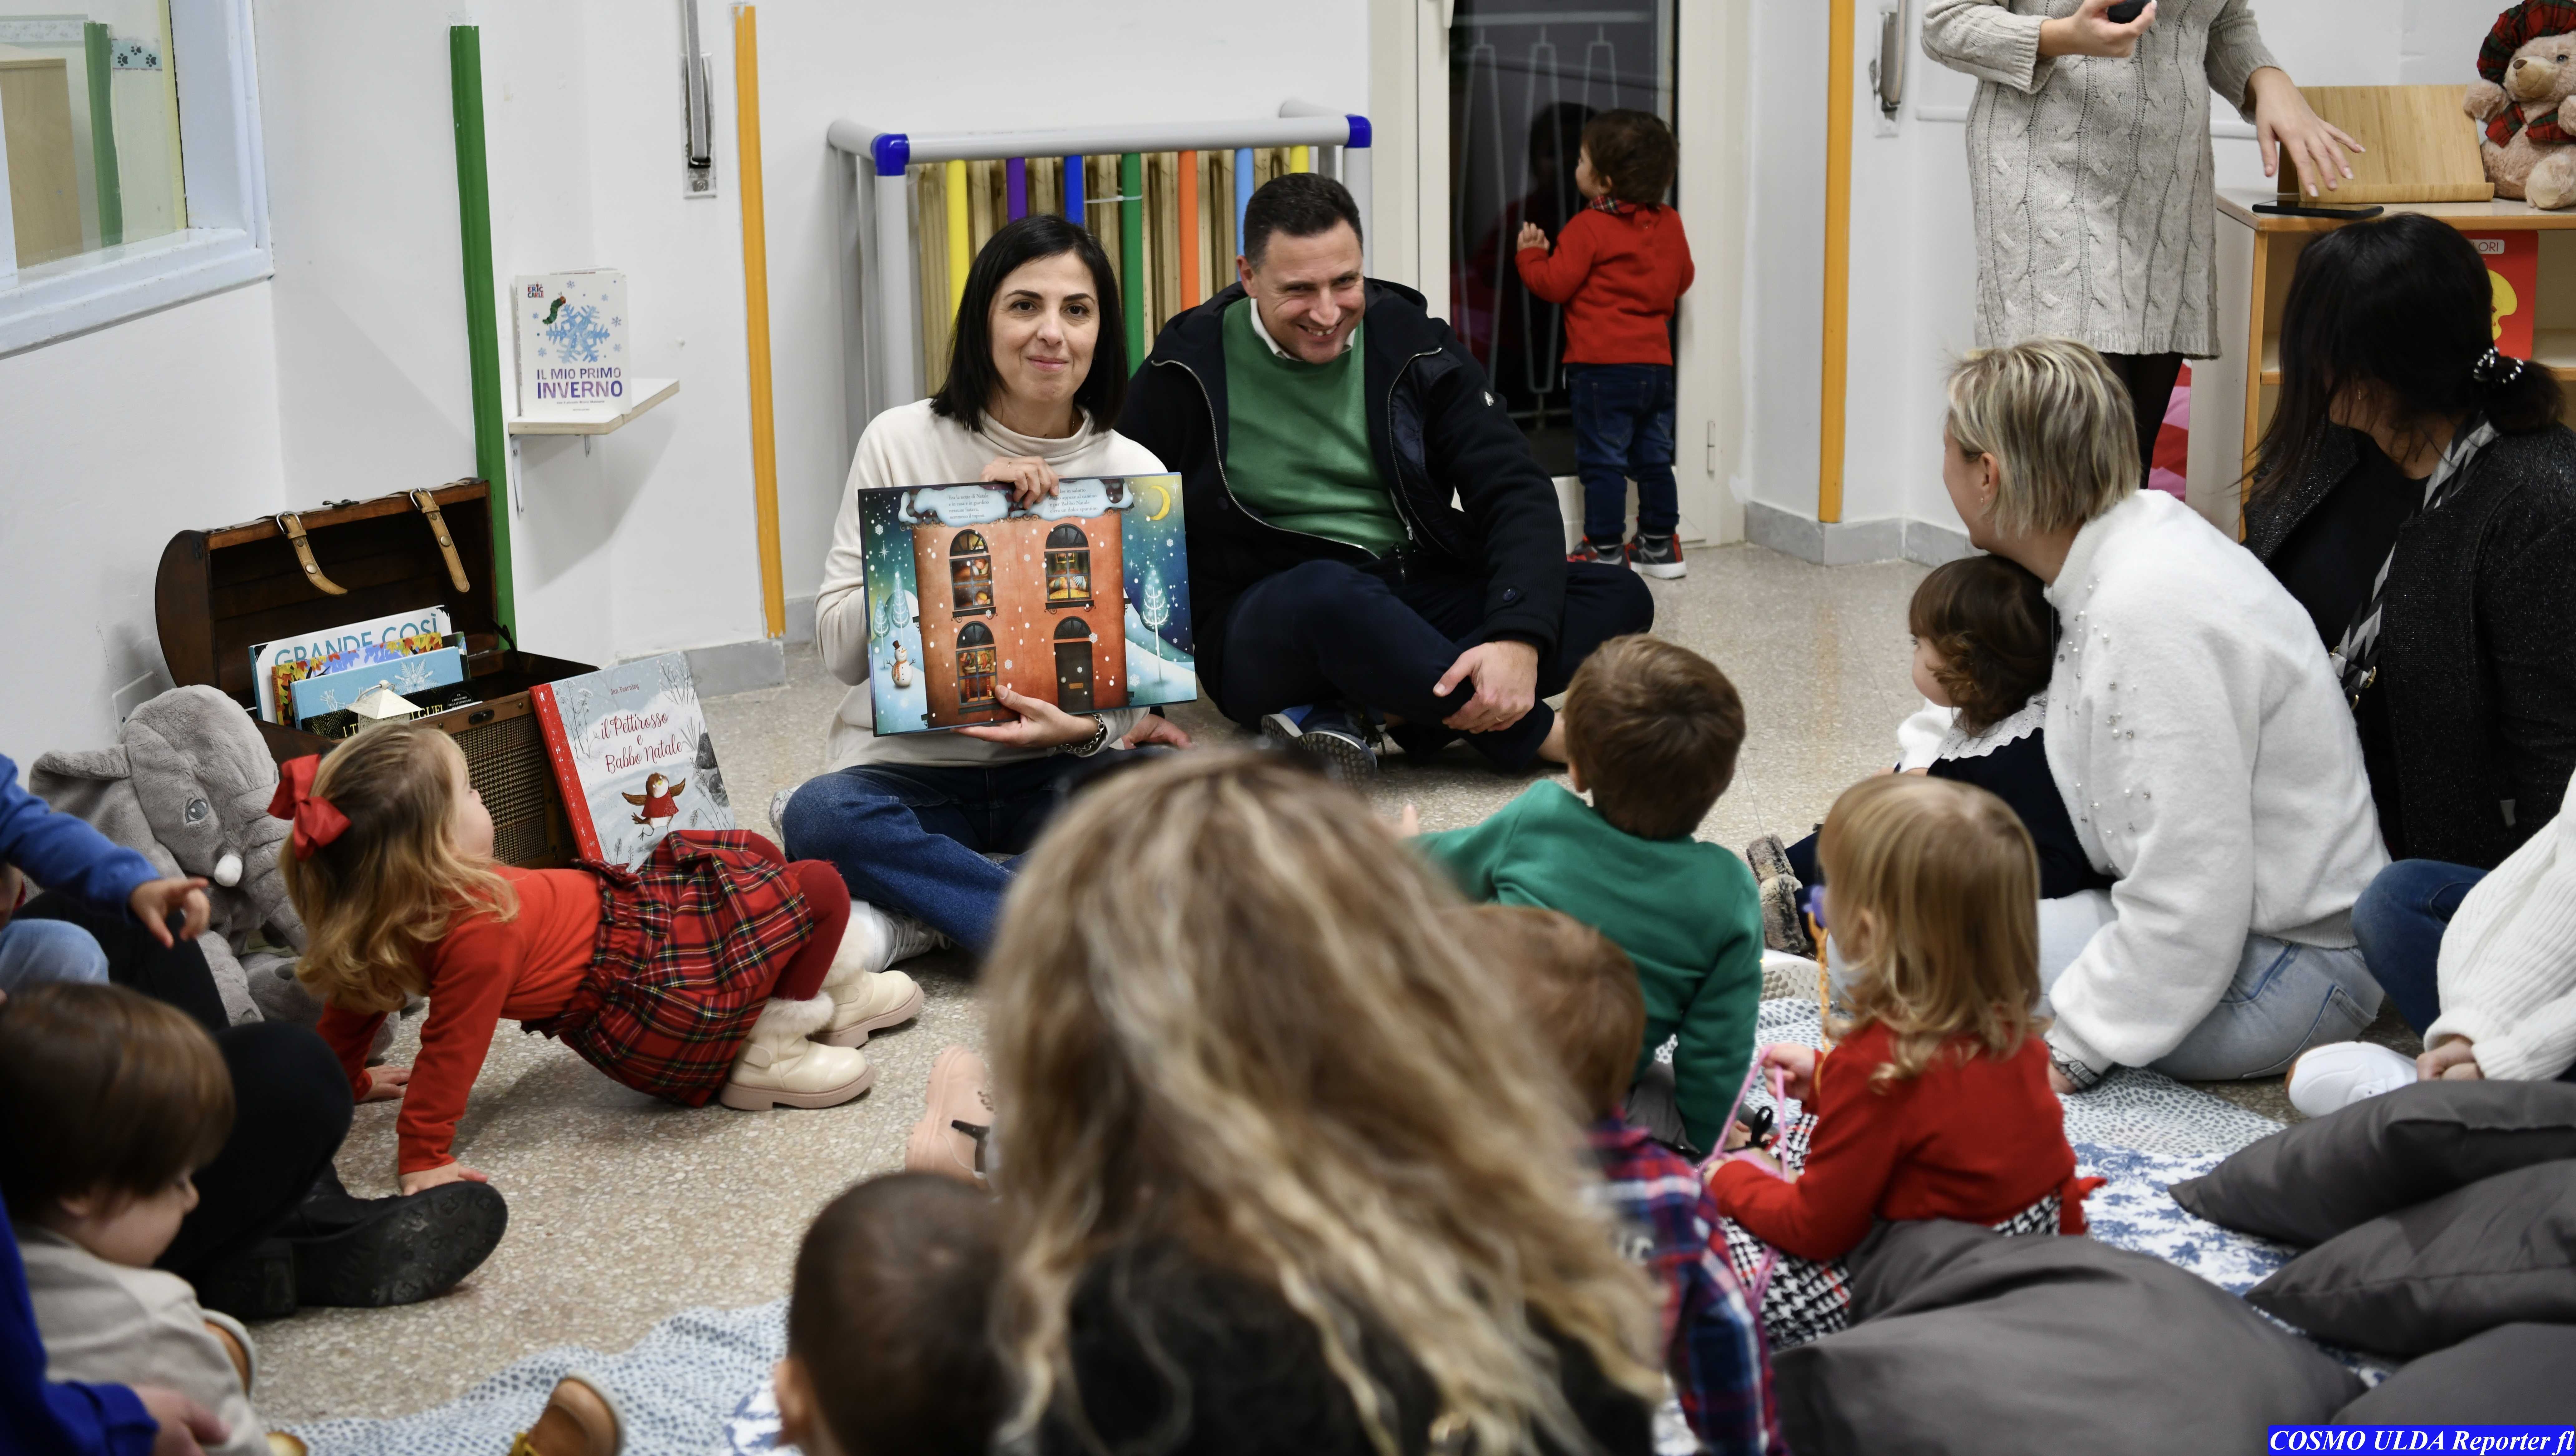 Natale al Nido di Gaeta: tre giorni di festa insieme alle famiglie